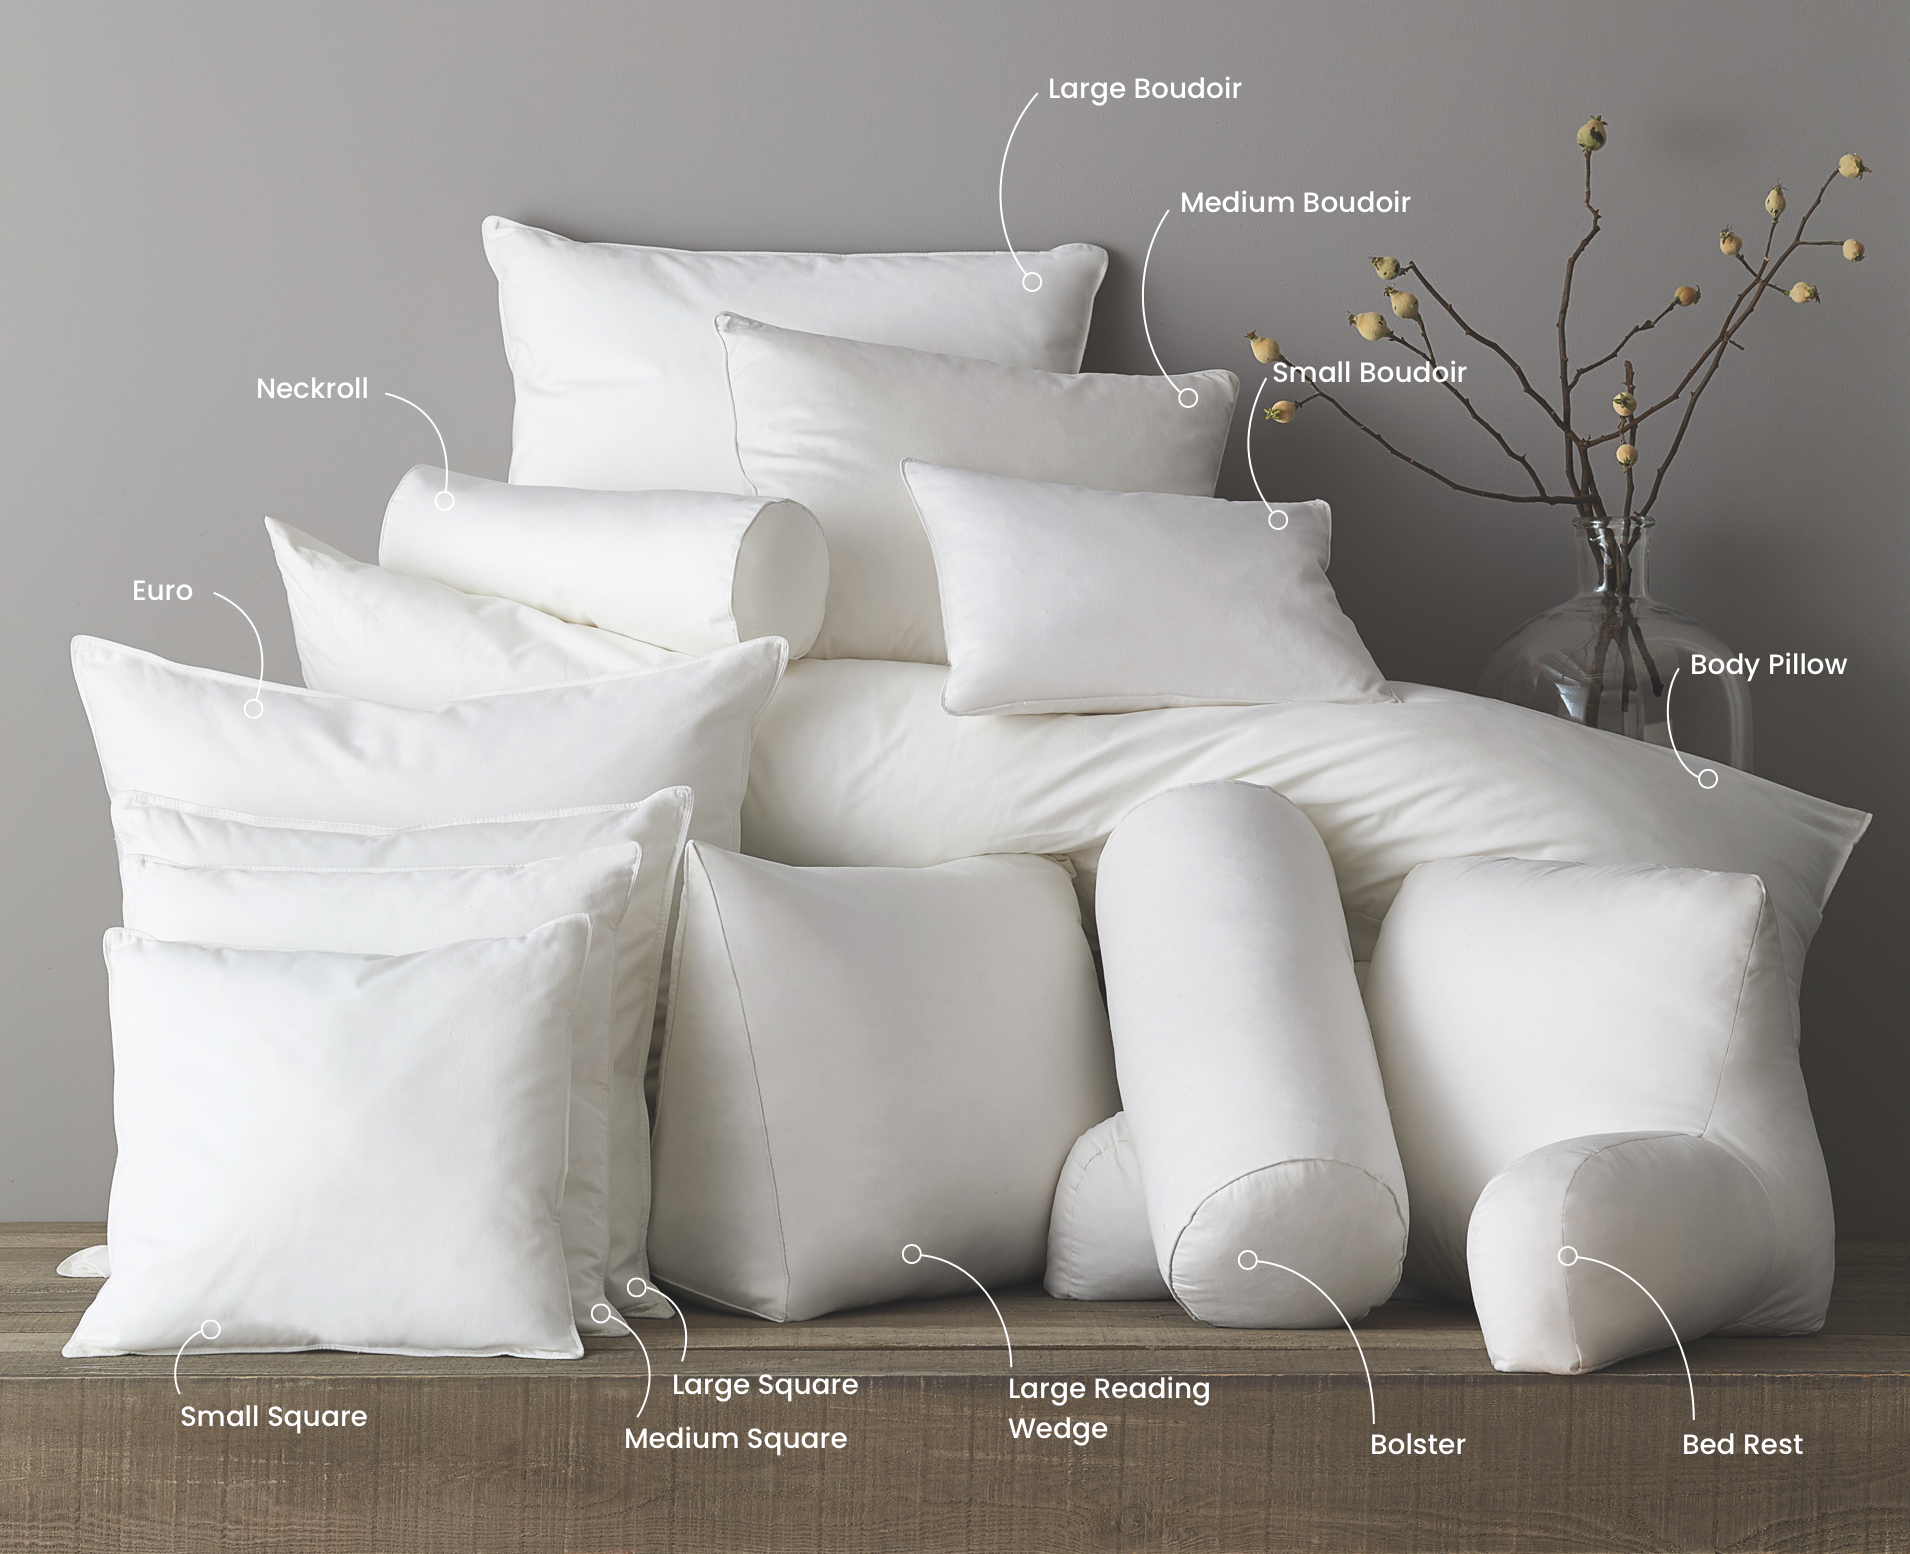 decorative pillow size